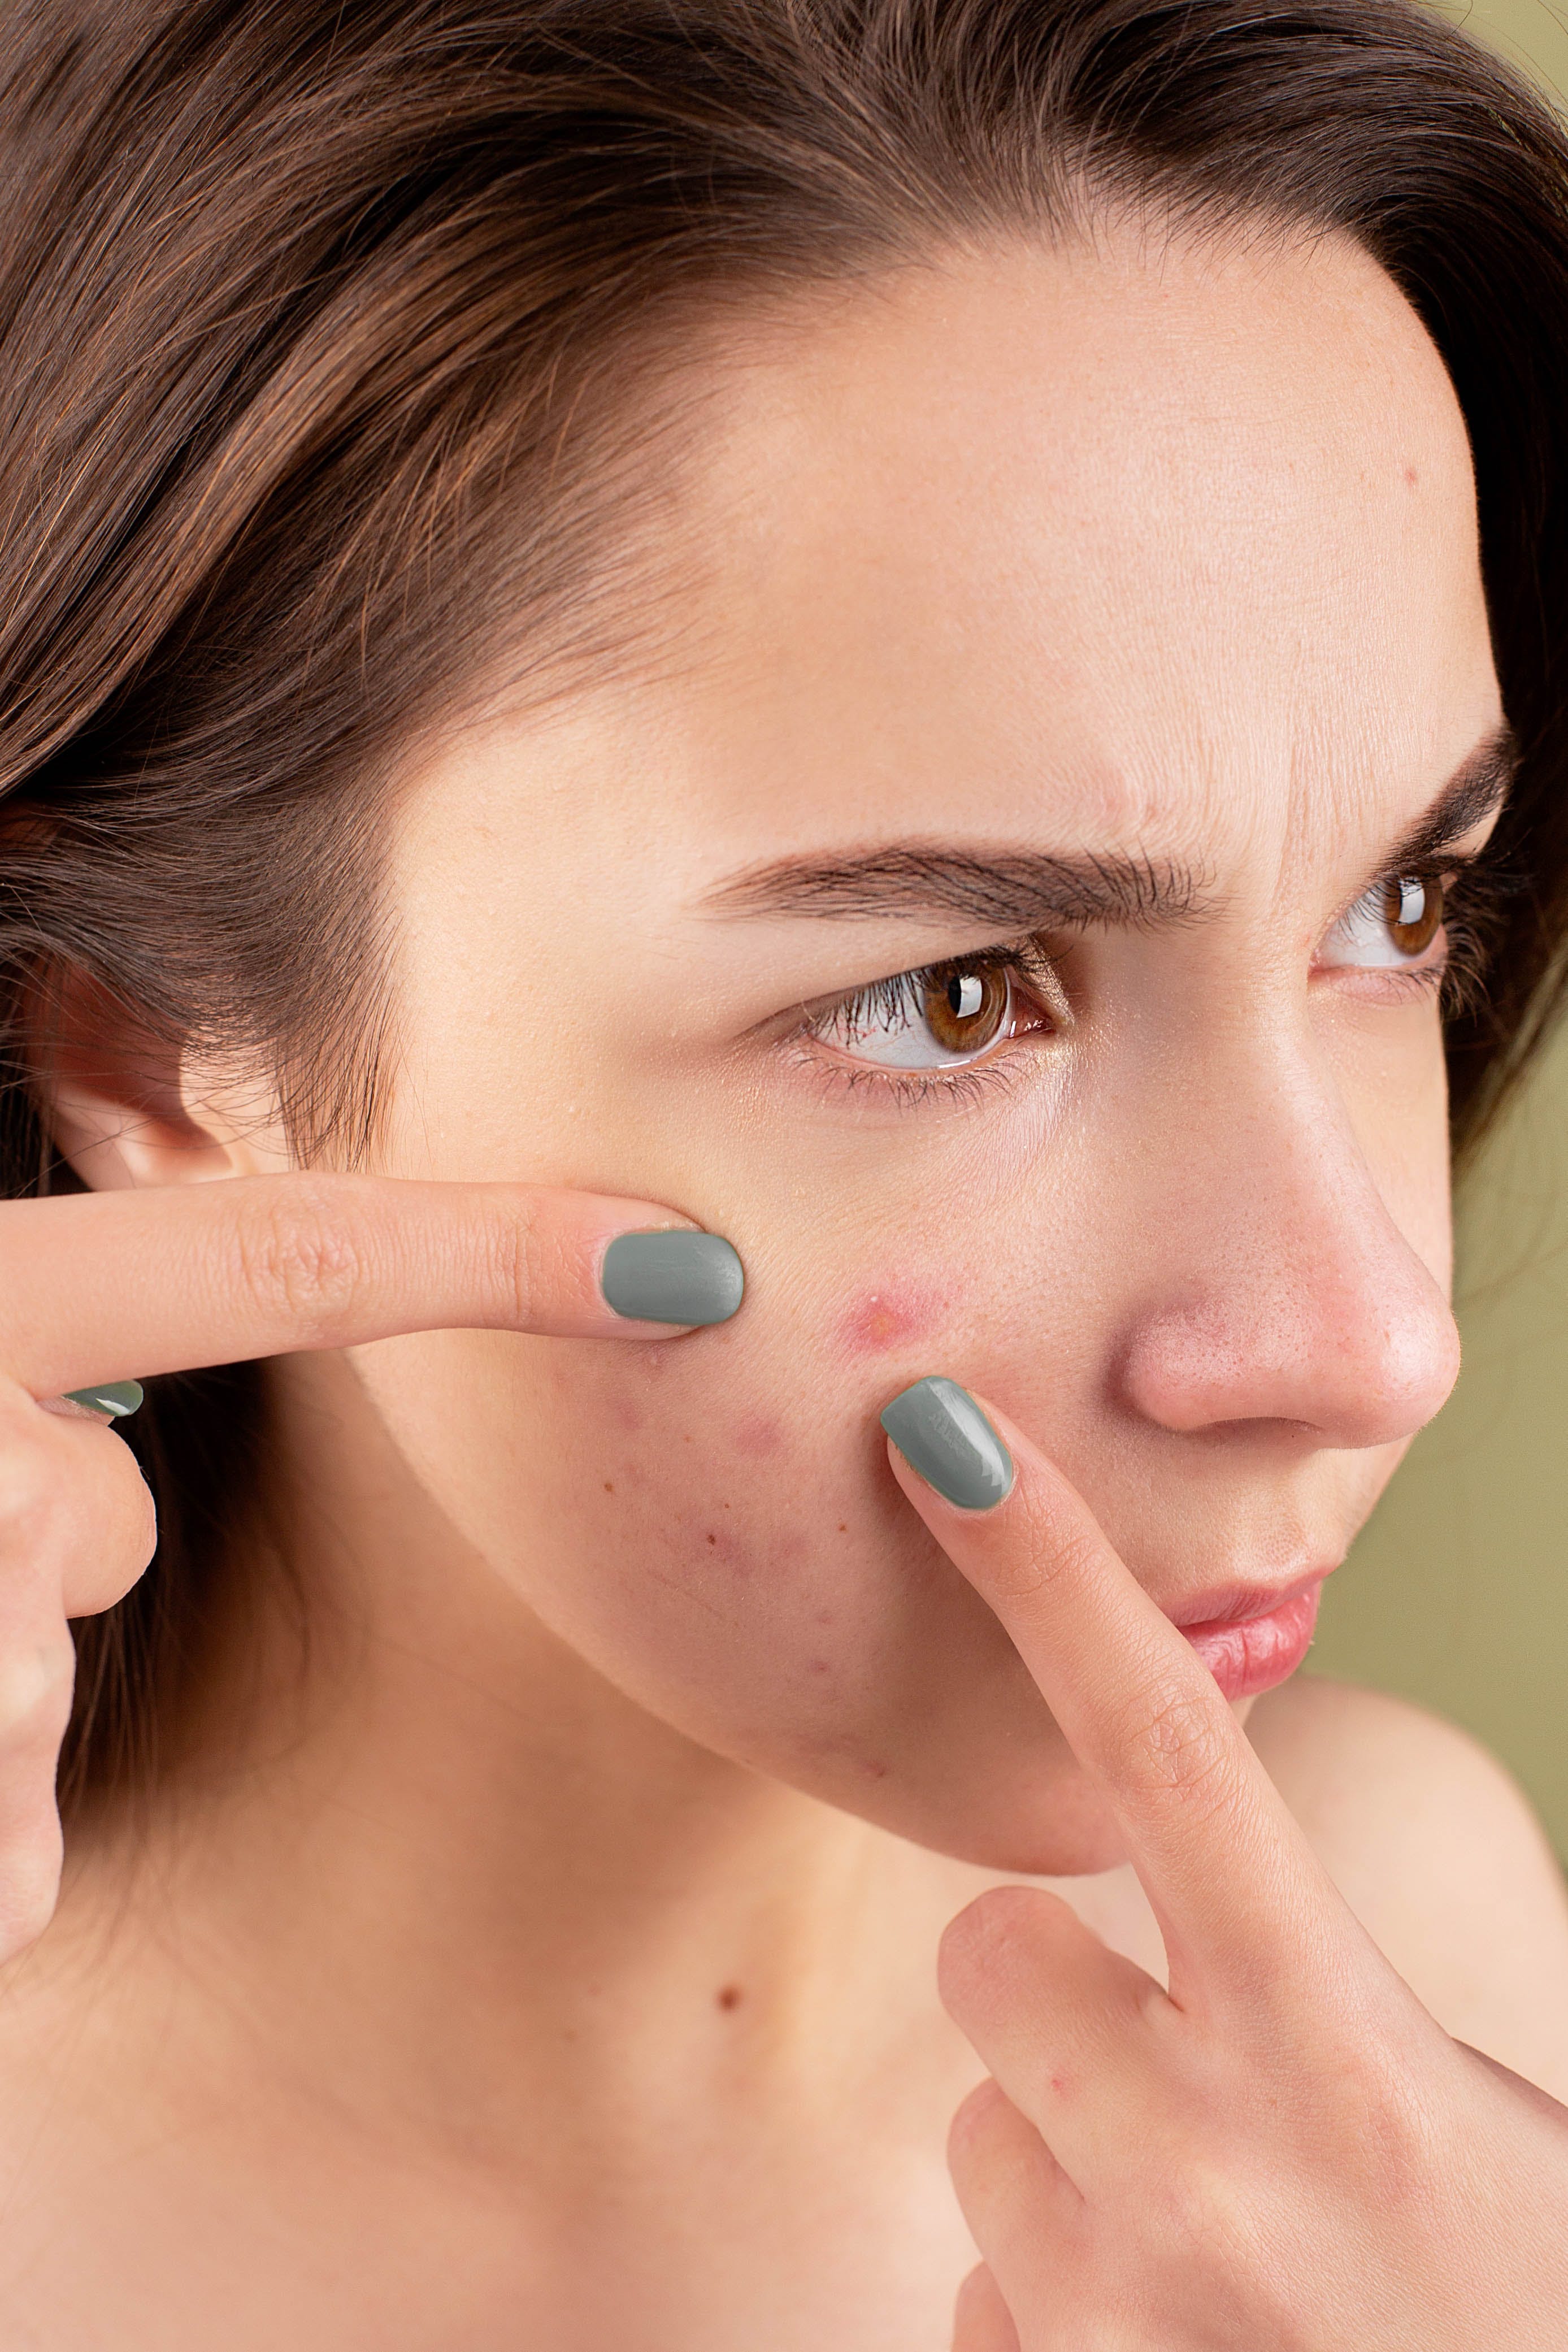 Eine Frau, die einen Pickel im Gesicht ausquetscht | Quelle: Pexels